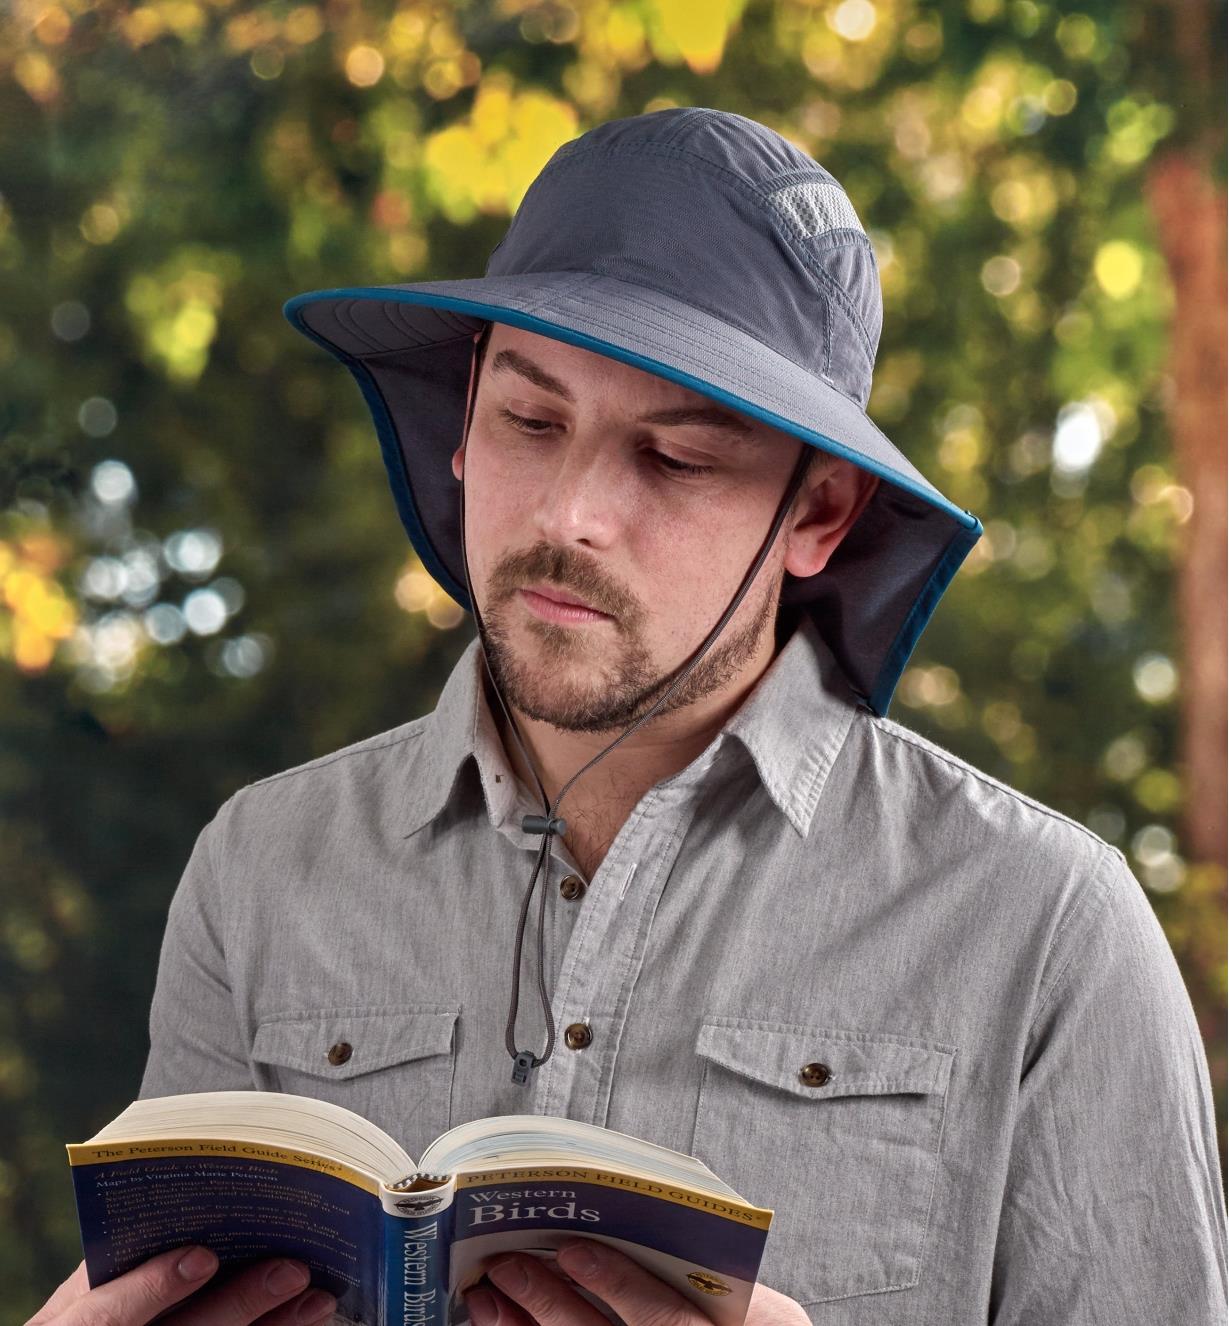 A man wearing an adventure sun hat reads a book outdoors